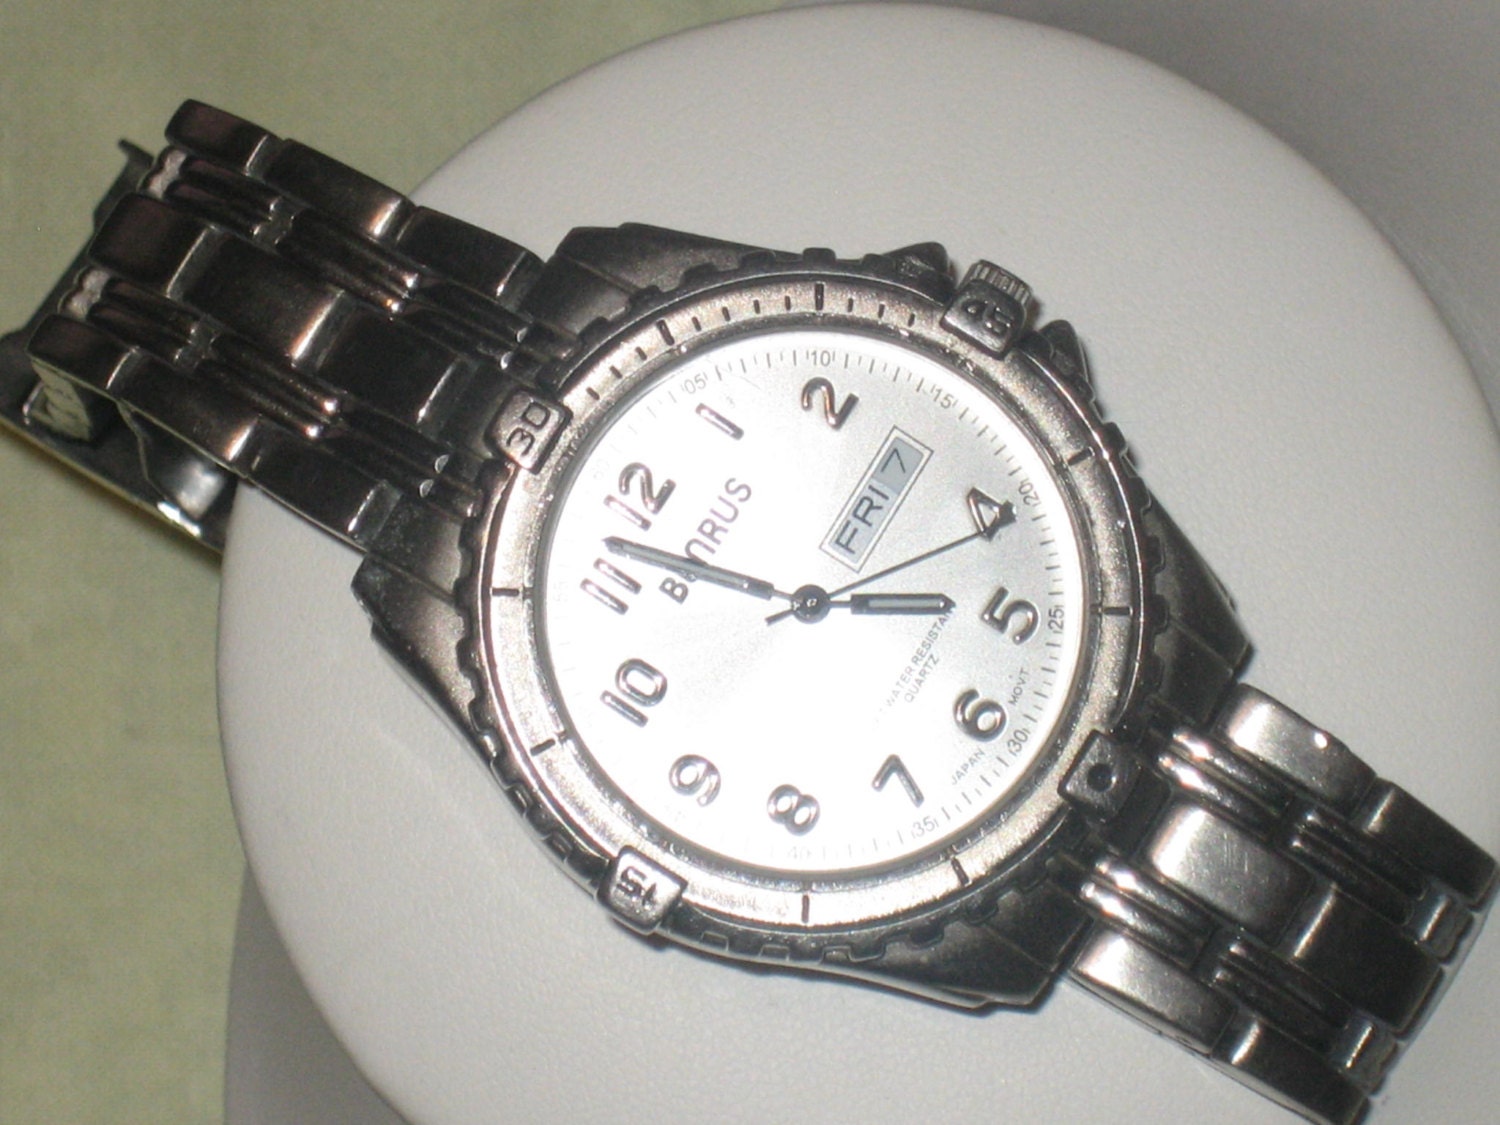 BENRUS Gentleman's Watch, Benrus Designer Water Resistant Watch ...